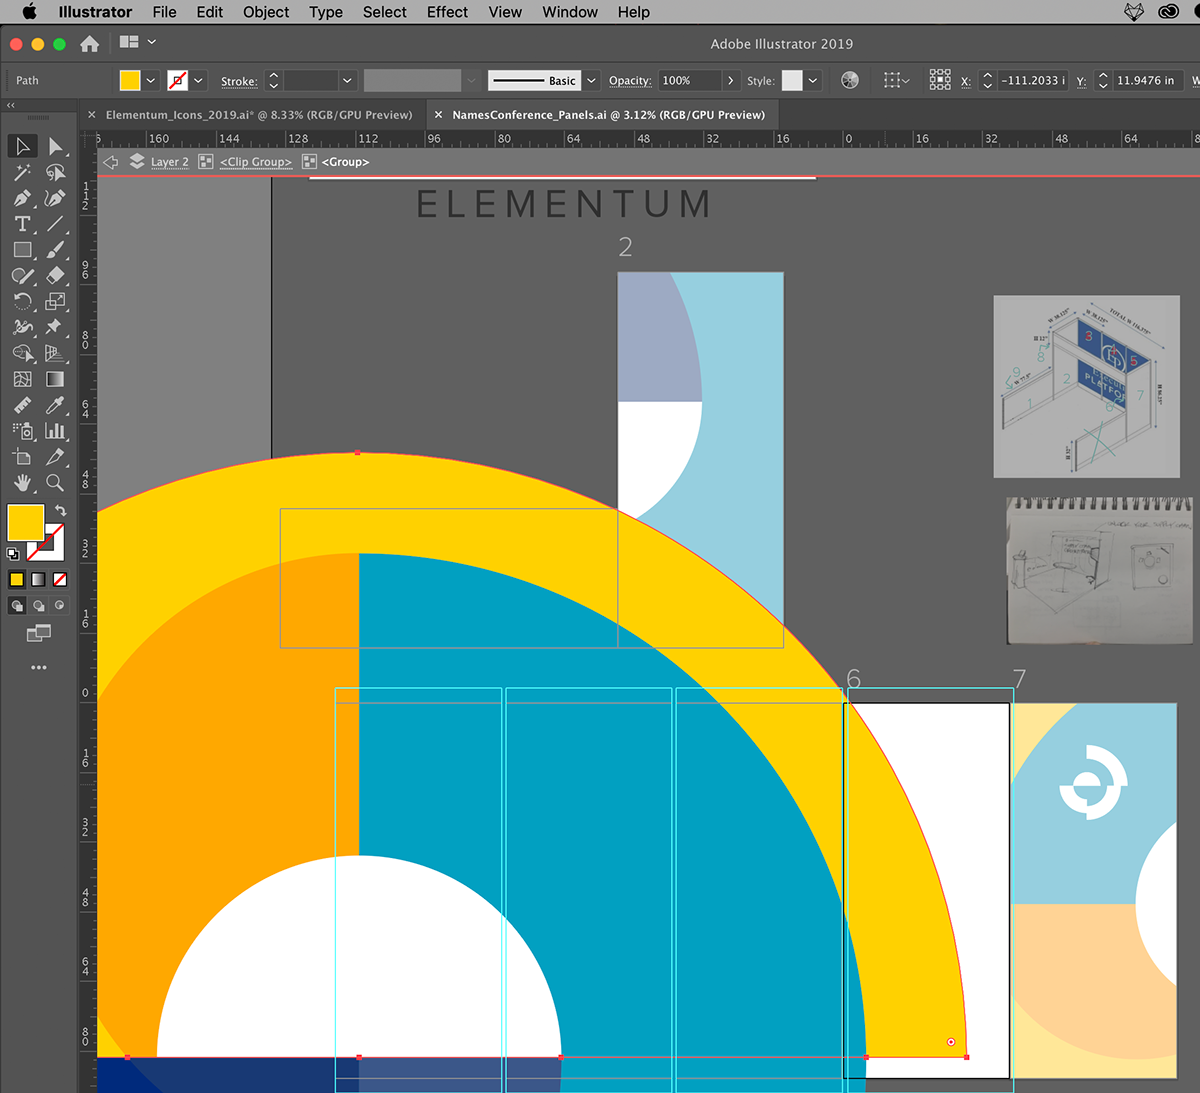 EmilioRiosDesigns blender 3d Illustrator Elementum 3d design booth design print design 